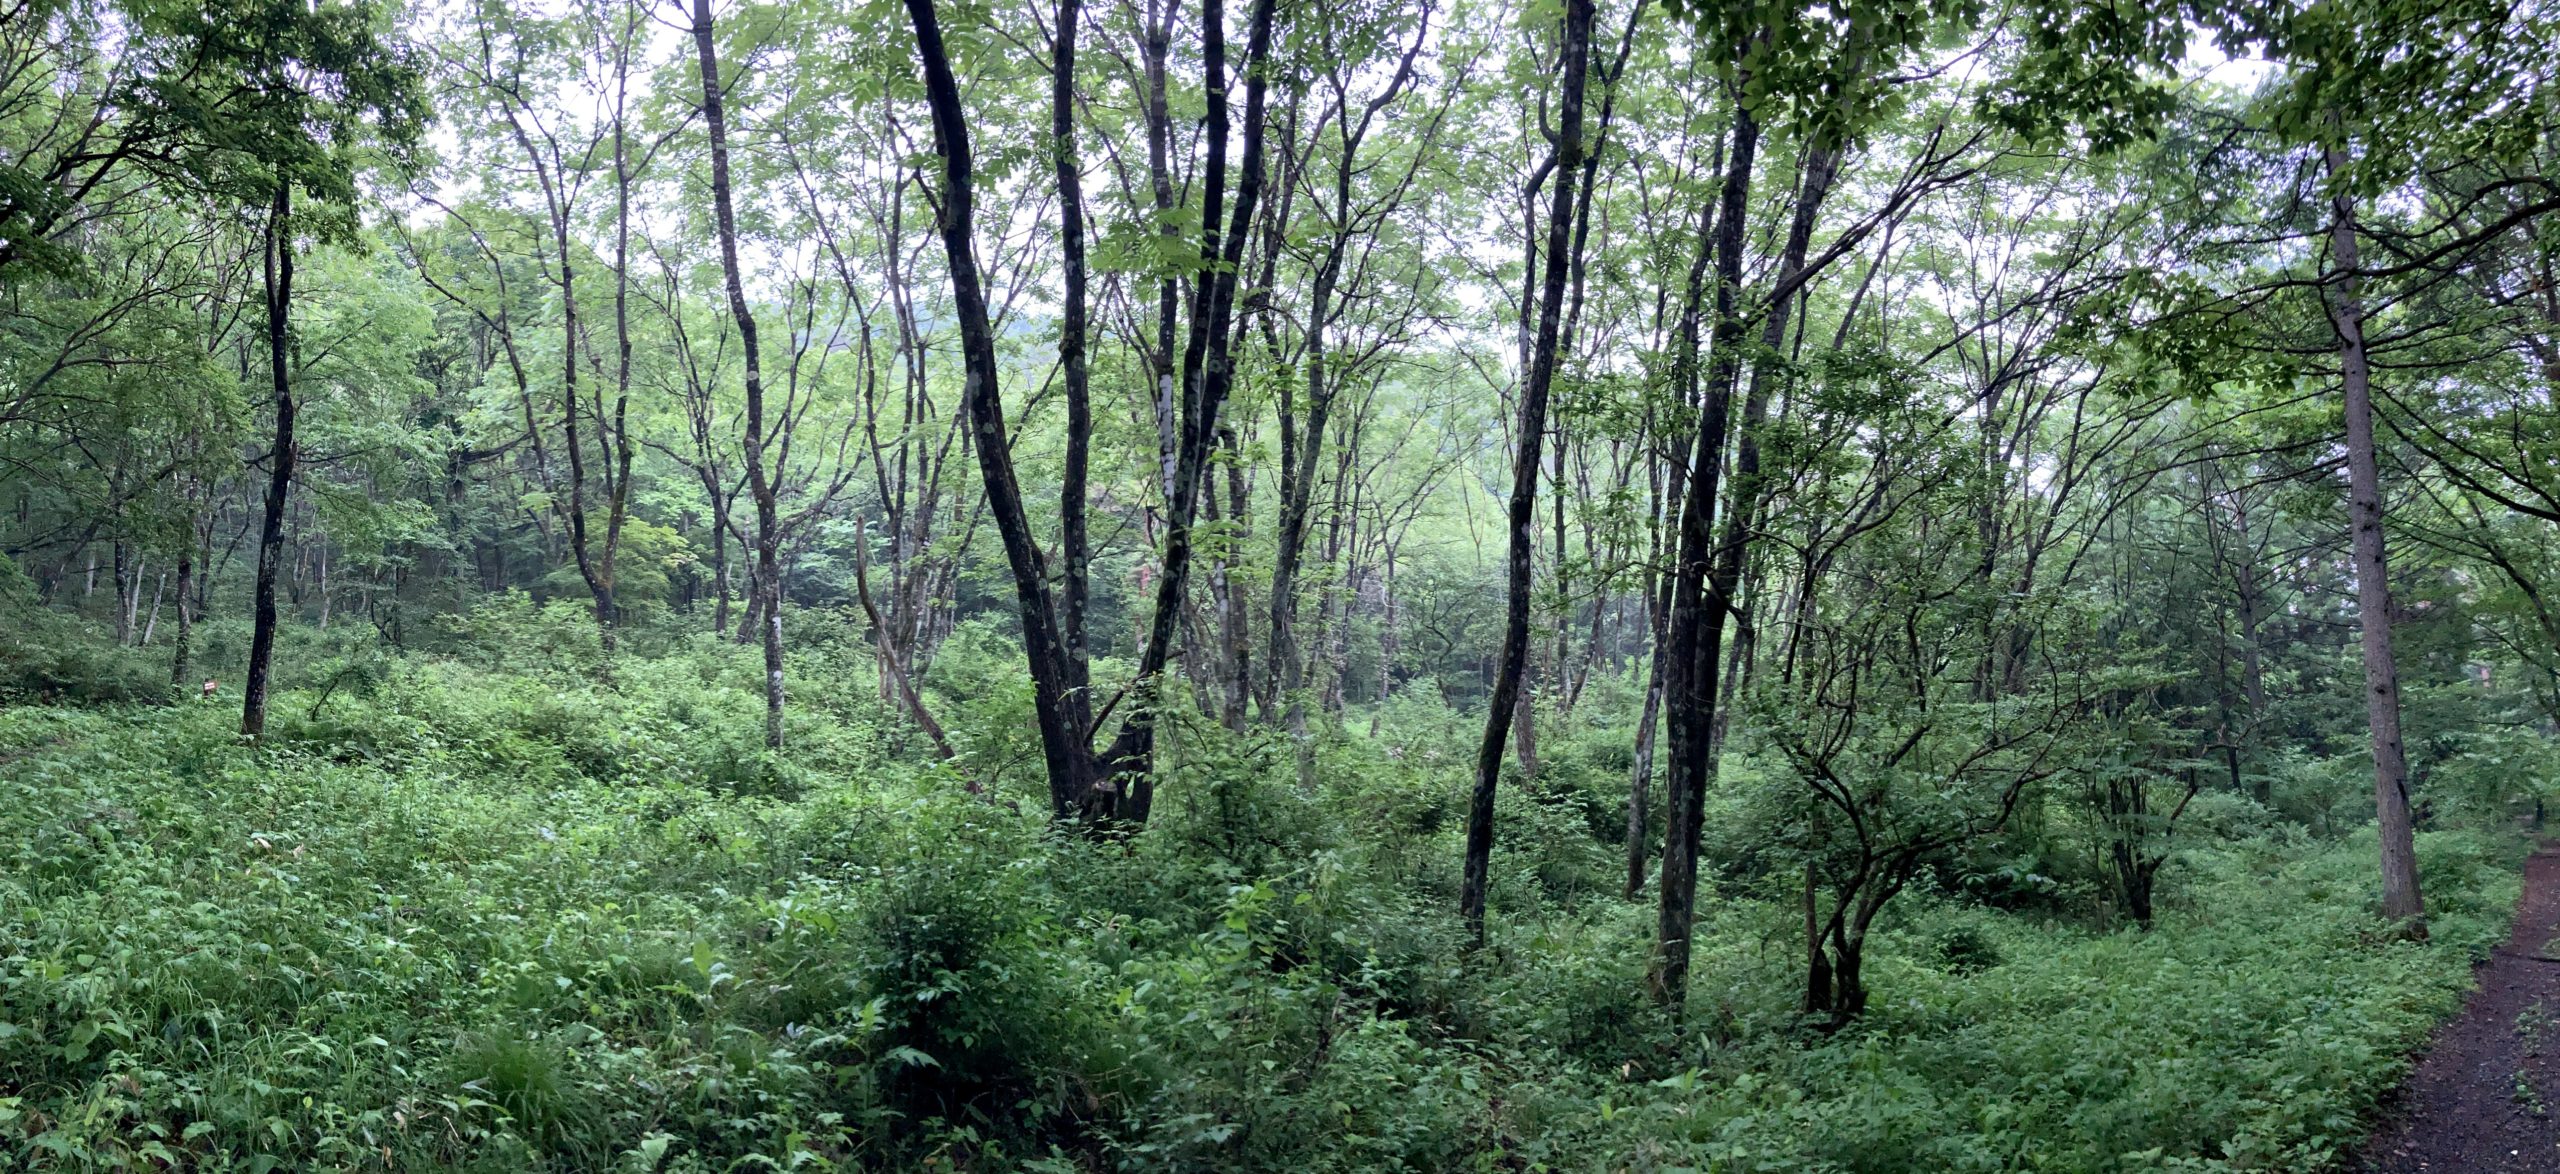 安曇野ではちょうど雨だった事もあって、新緑の梅雨らしいハイキングを楽しめた。森の写真。